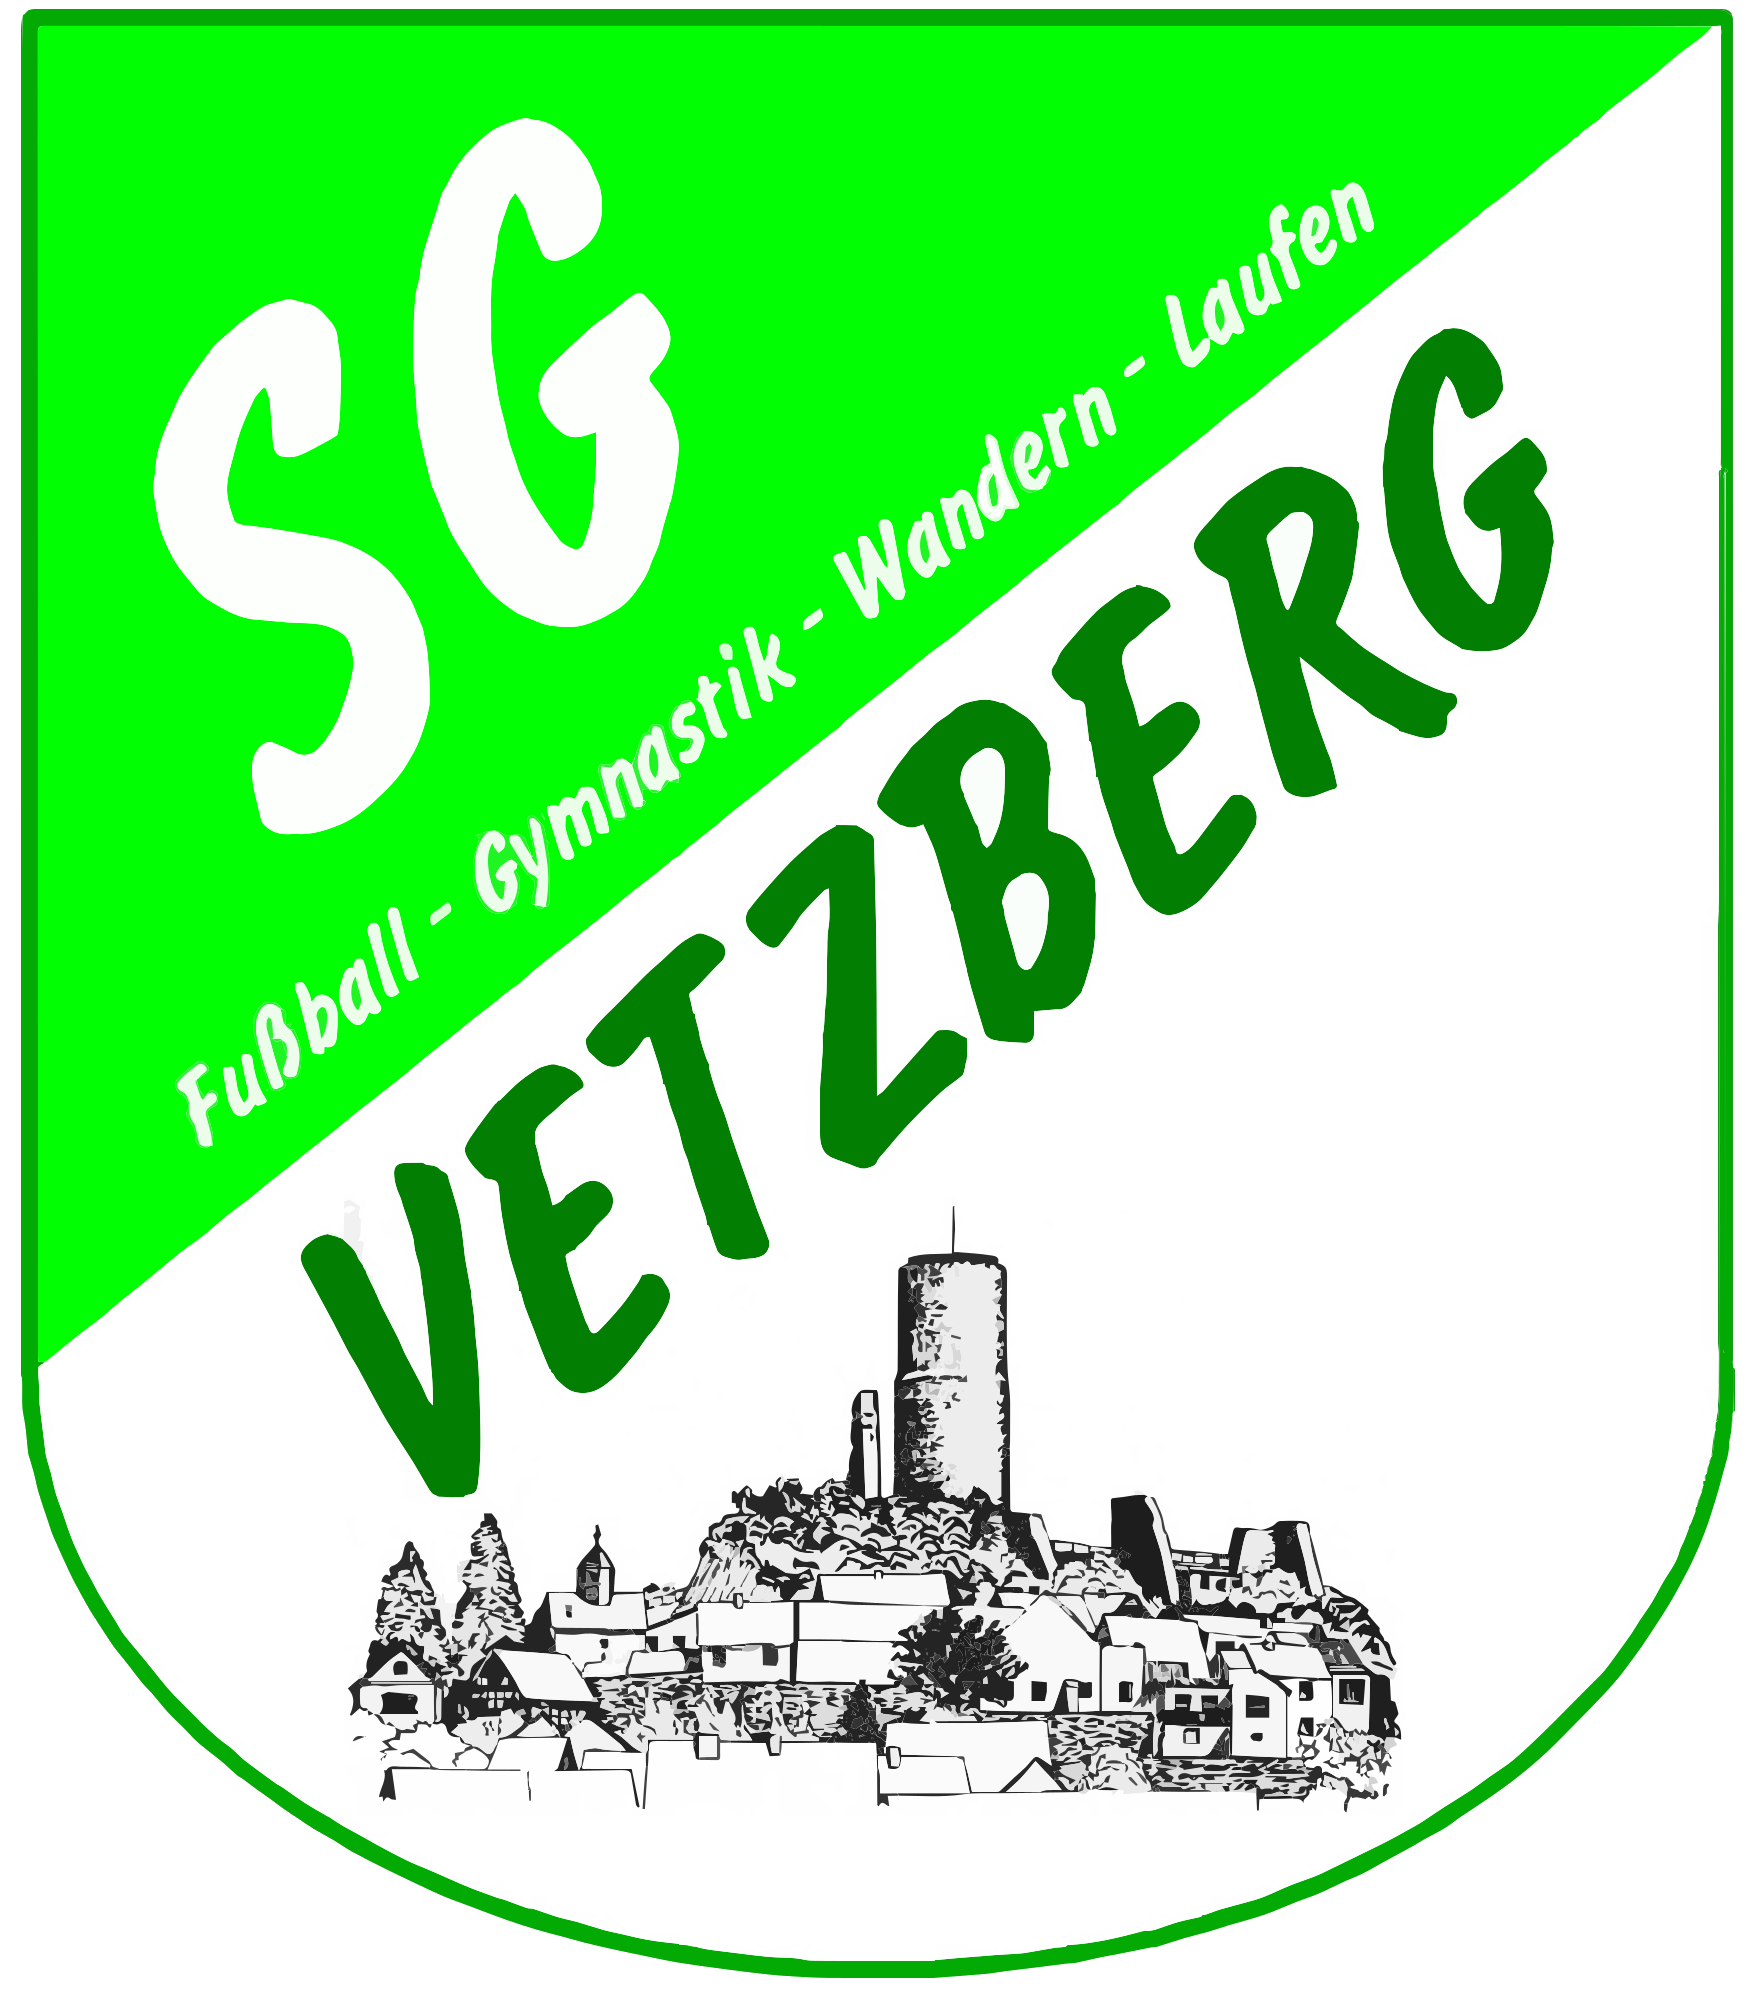 SGV Logo